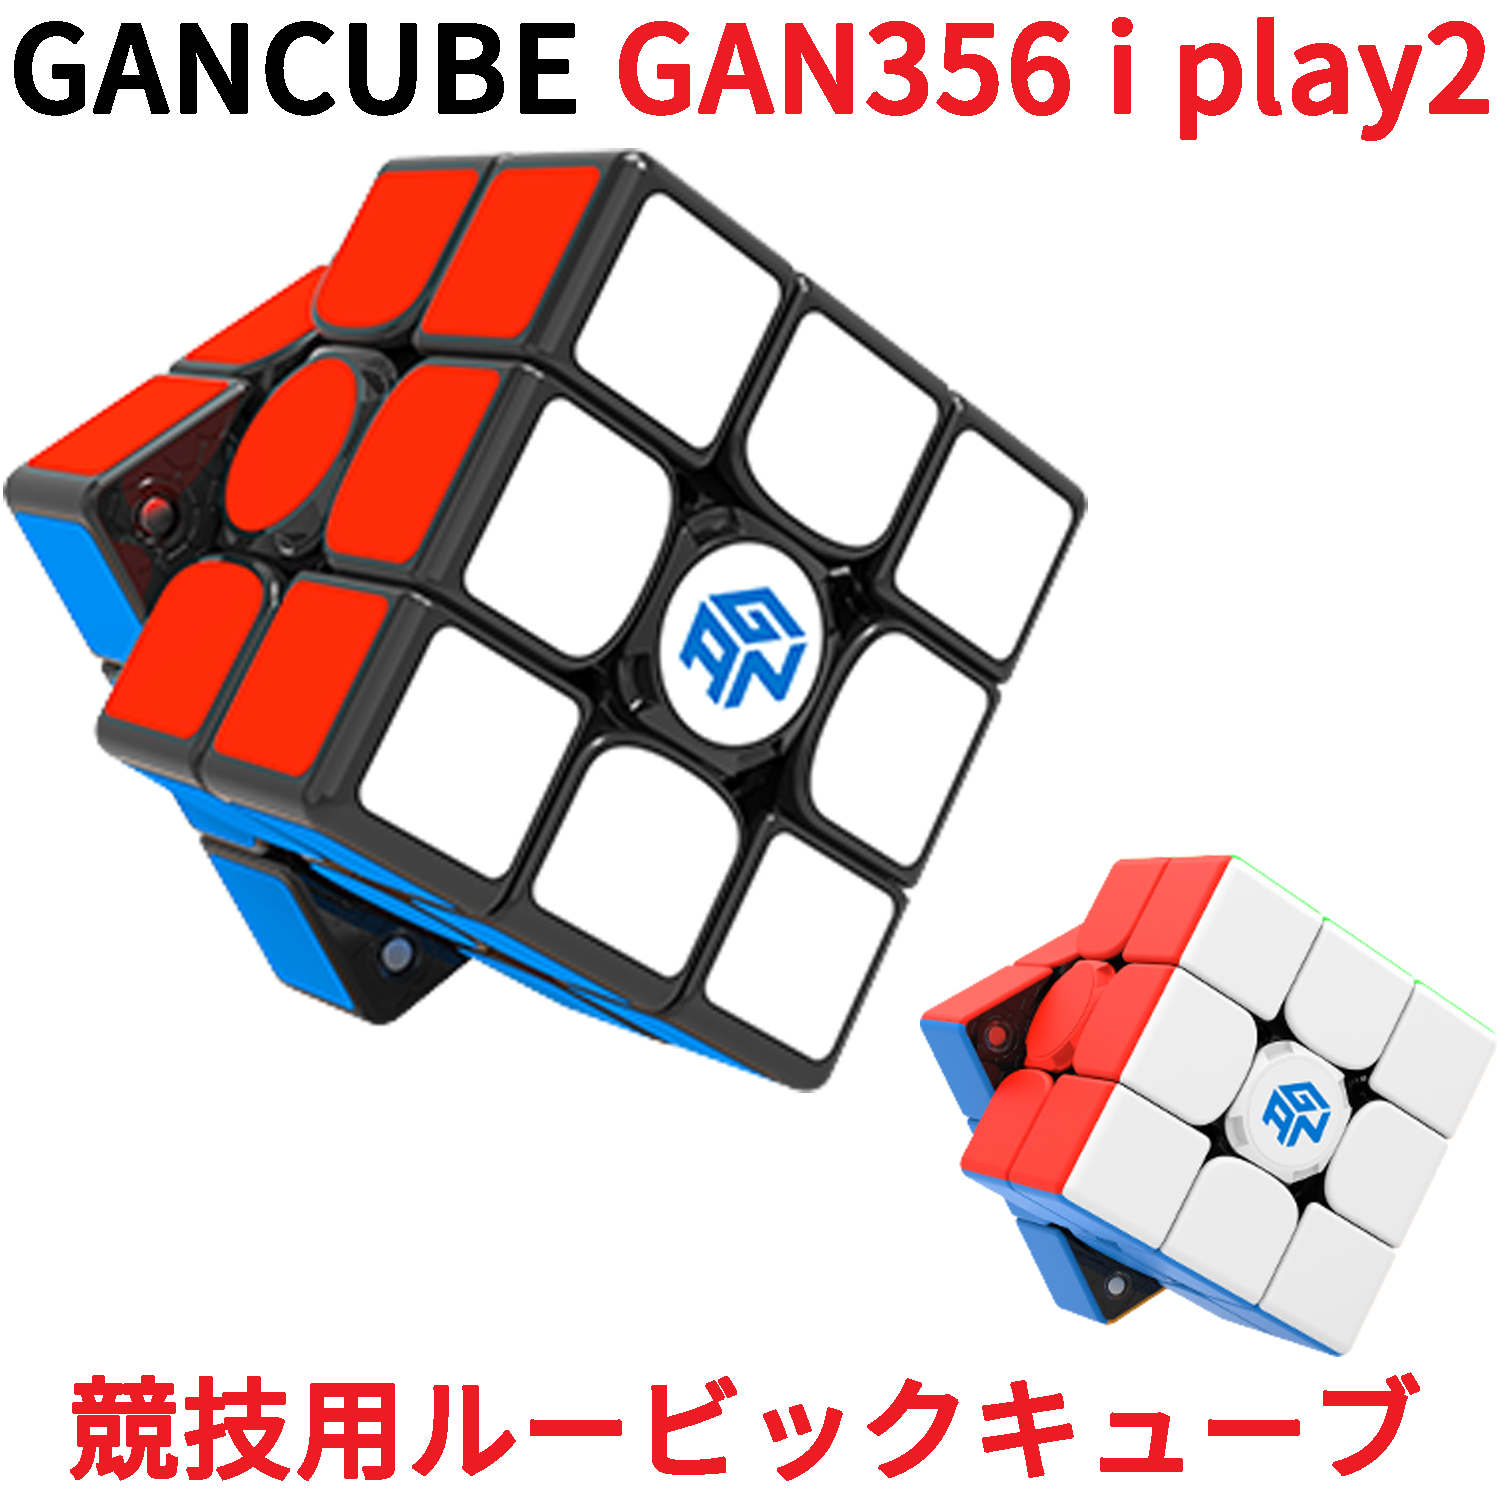 Gancube Gan356 I Play2 磁気 スピードキューブ 競技用 ルービックキューブ 3x3 磁石 ガンキューブ Gan356 I Play 2 アイ プレイツー 3x3x3 白 磁石 公式 圧縮 マグネット 内蔵 キューブ 立体パズル スマートキューブ マジックキューブ スマホと連携しタイム測定 ソルブ